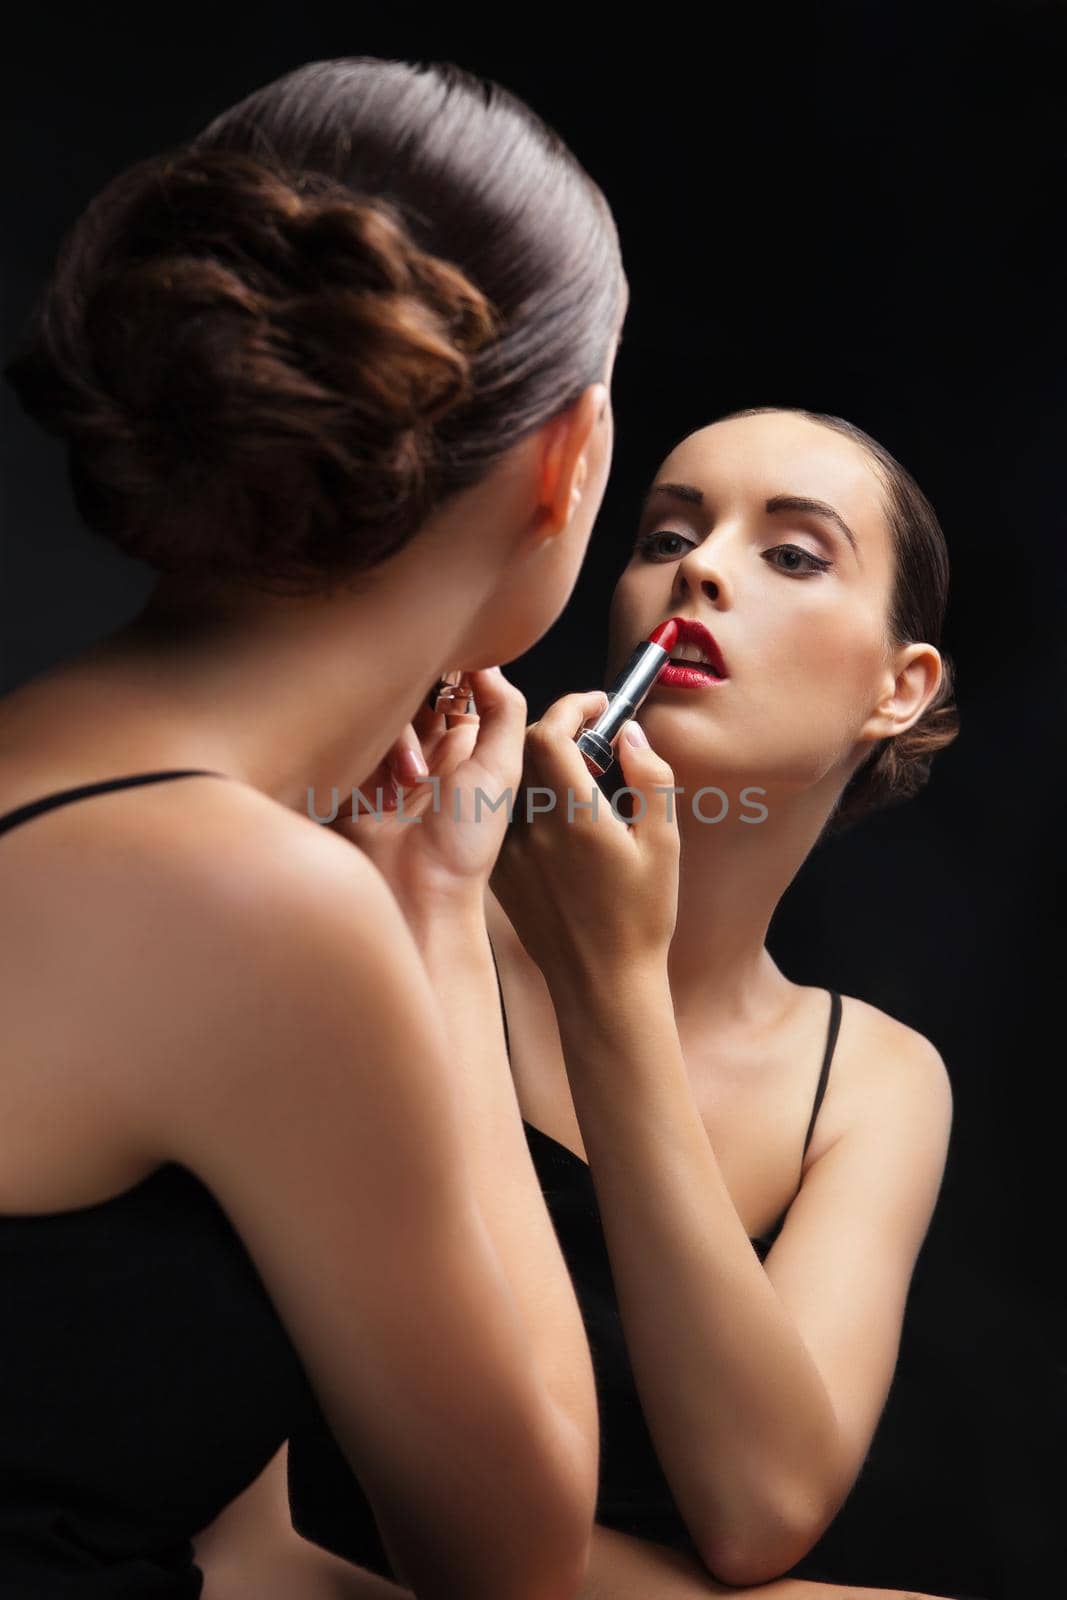 Beautiful young woman near mirror with lipstick by Julenochek